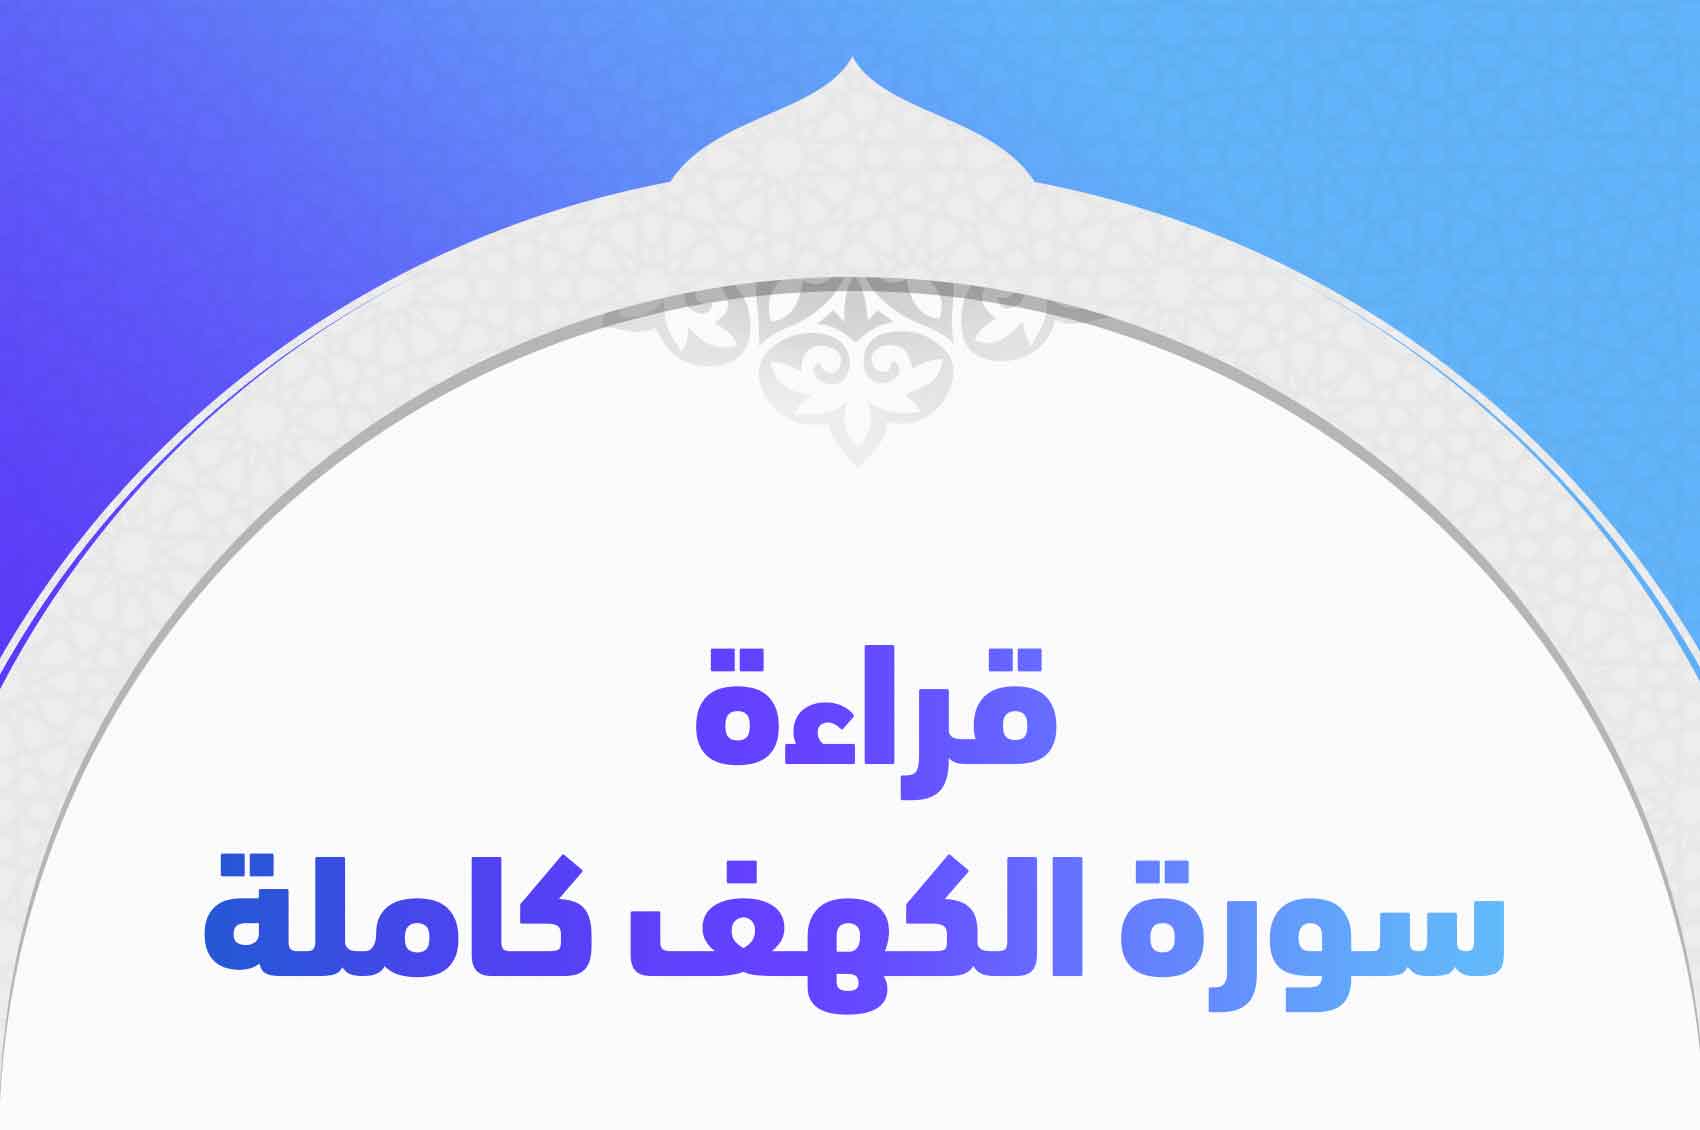 جناح راحة مخطئ سورة الكهف للقراءة بخط كبير - forkliftarabia.com